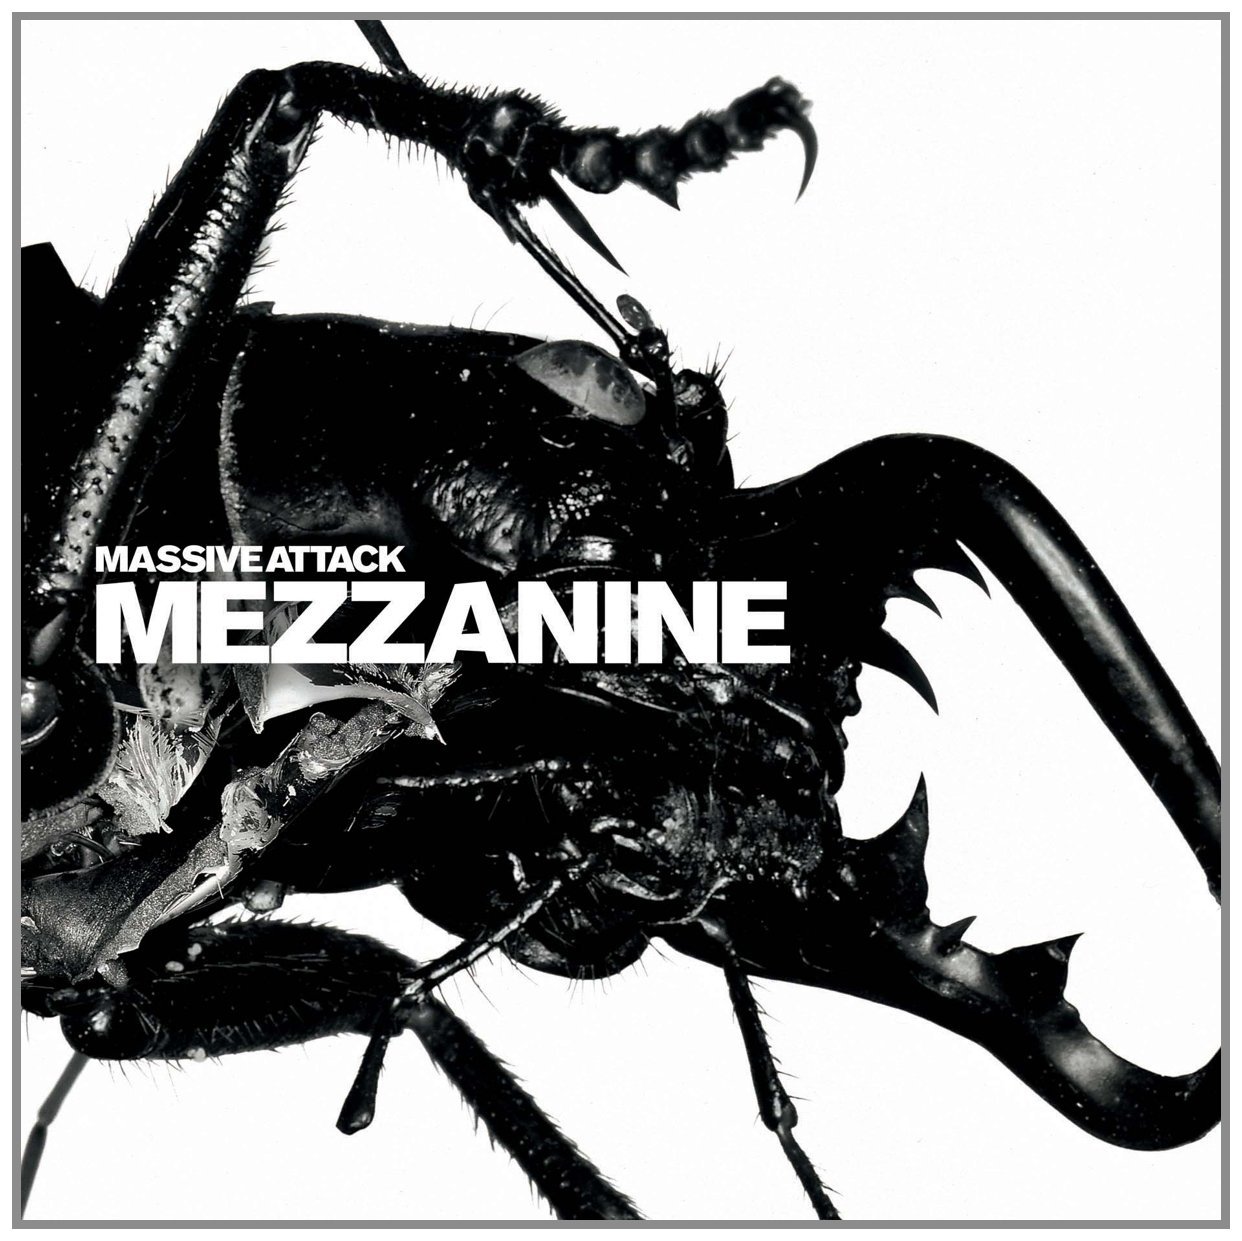 Massive Attack - Mezzanine (Album Cover)